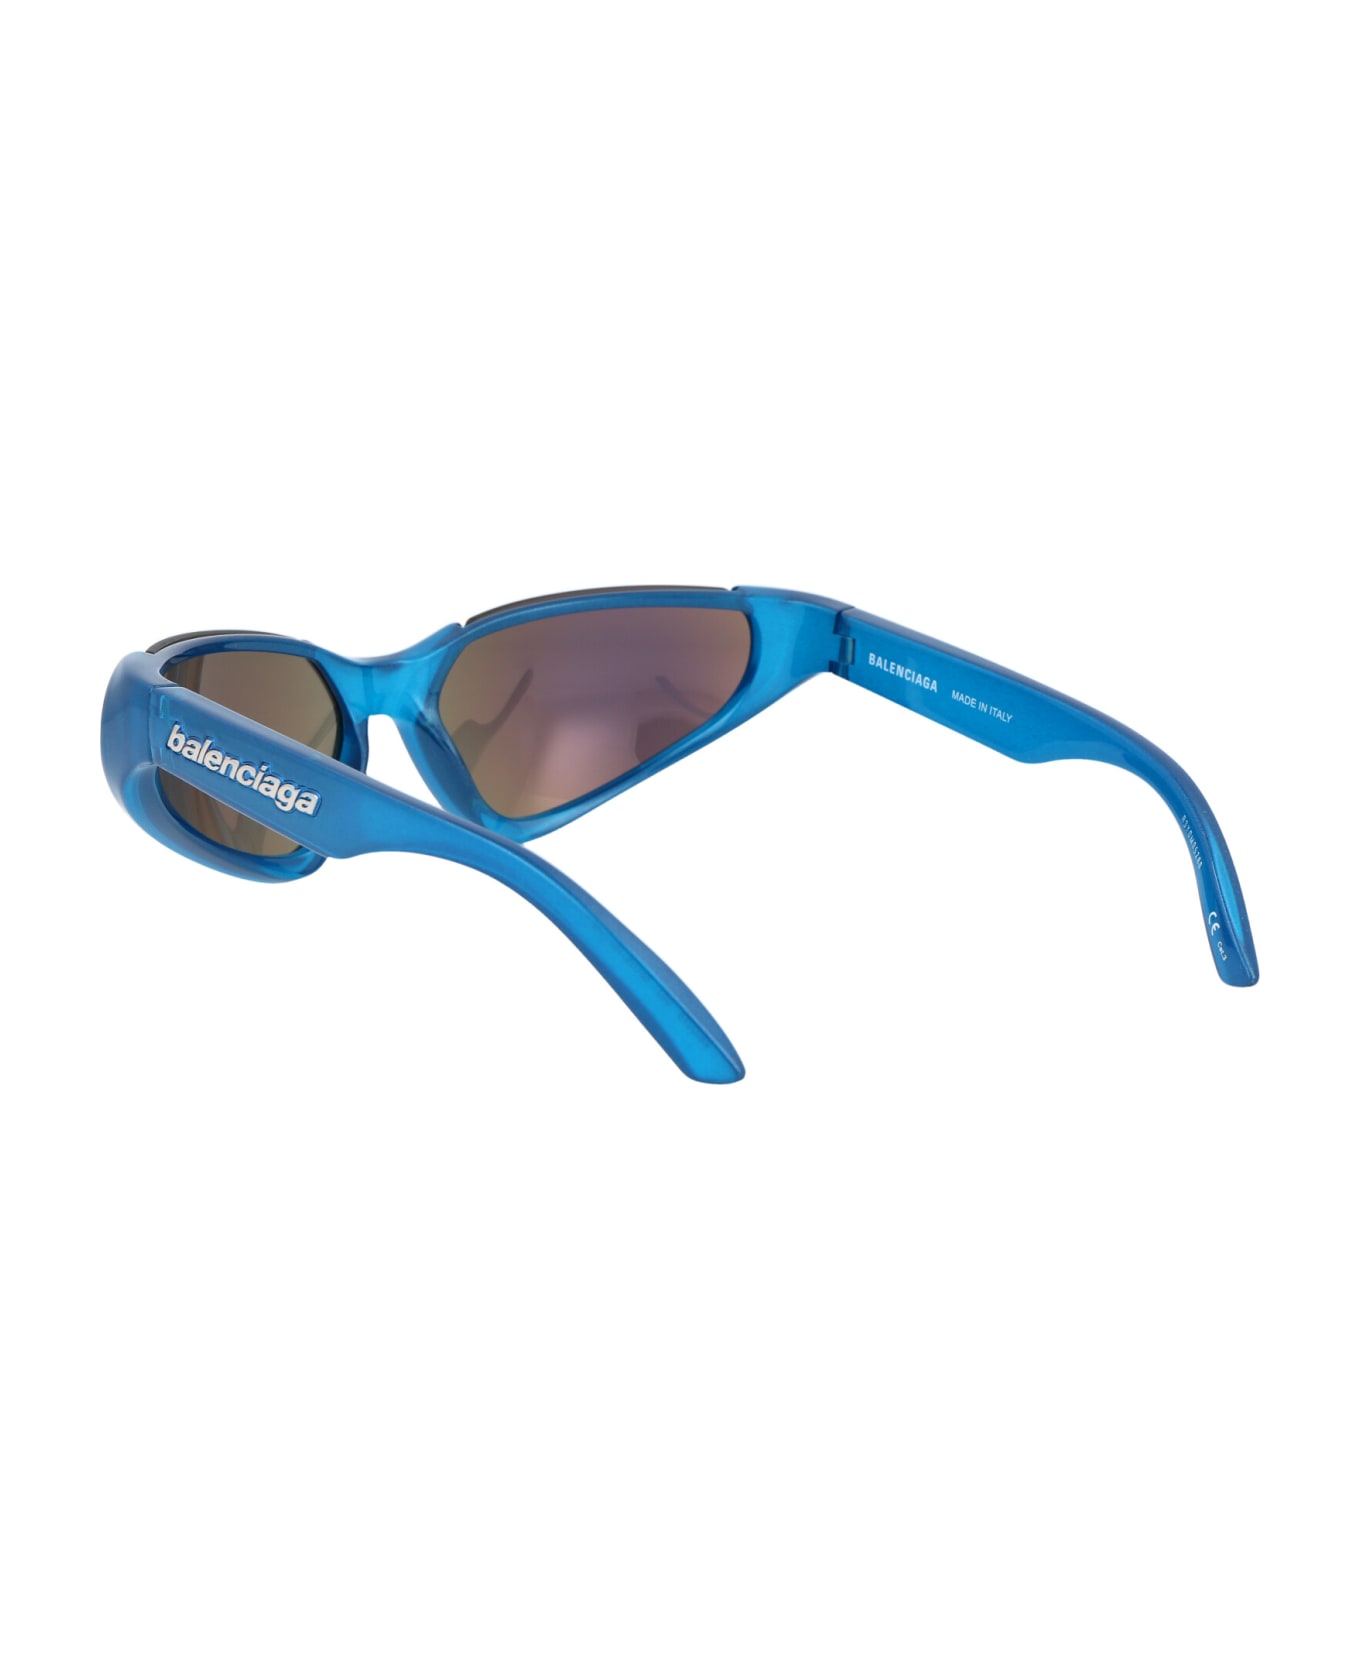 Balenciaga Eyewear Bb0202s Sunglasses - 003 LIGHT BLUE LIGHT BLUE GREEN